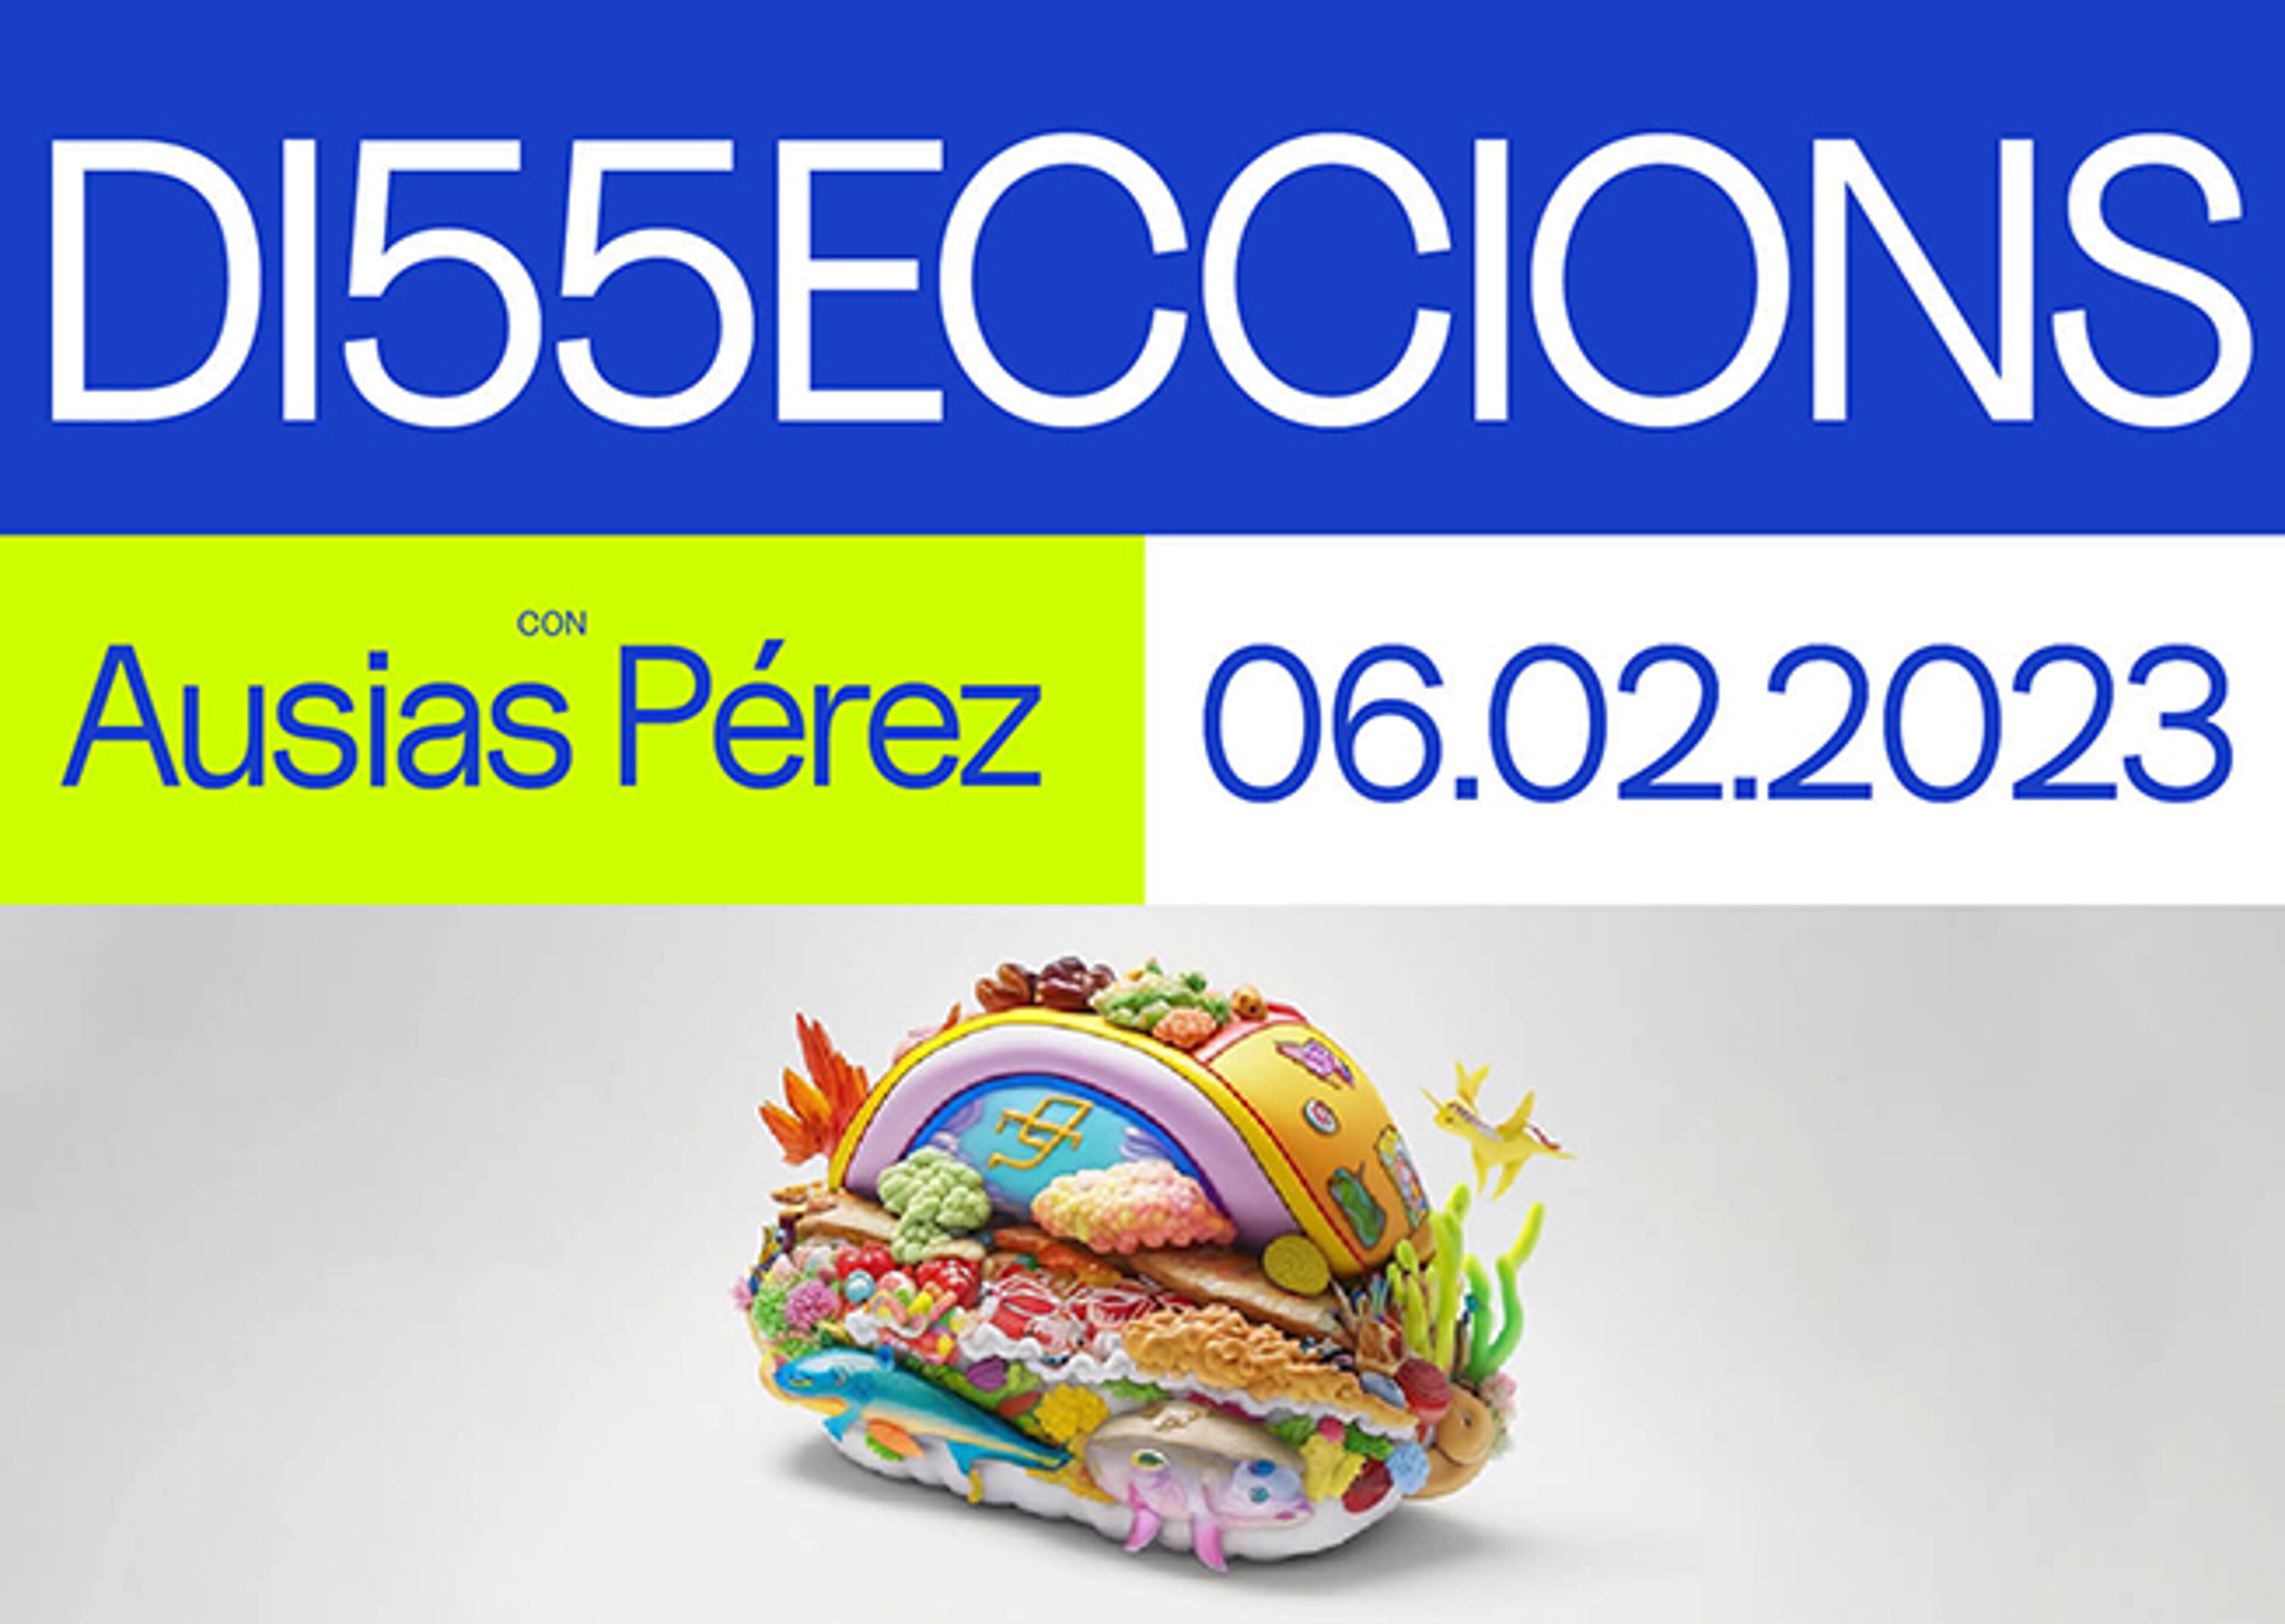 Un cartel colorido que anuncia "DI55ECCIONS" con "Ausias Pérez" y la fecha "06.02.2023", con una vibrante escultura de huevo decorada.

